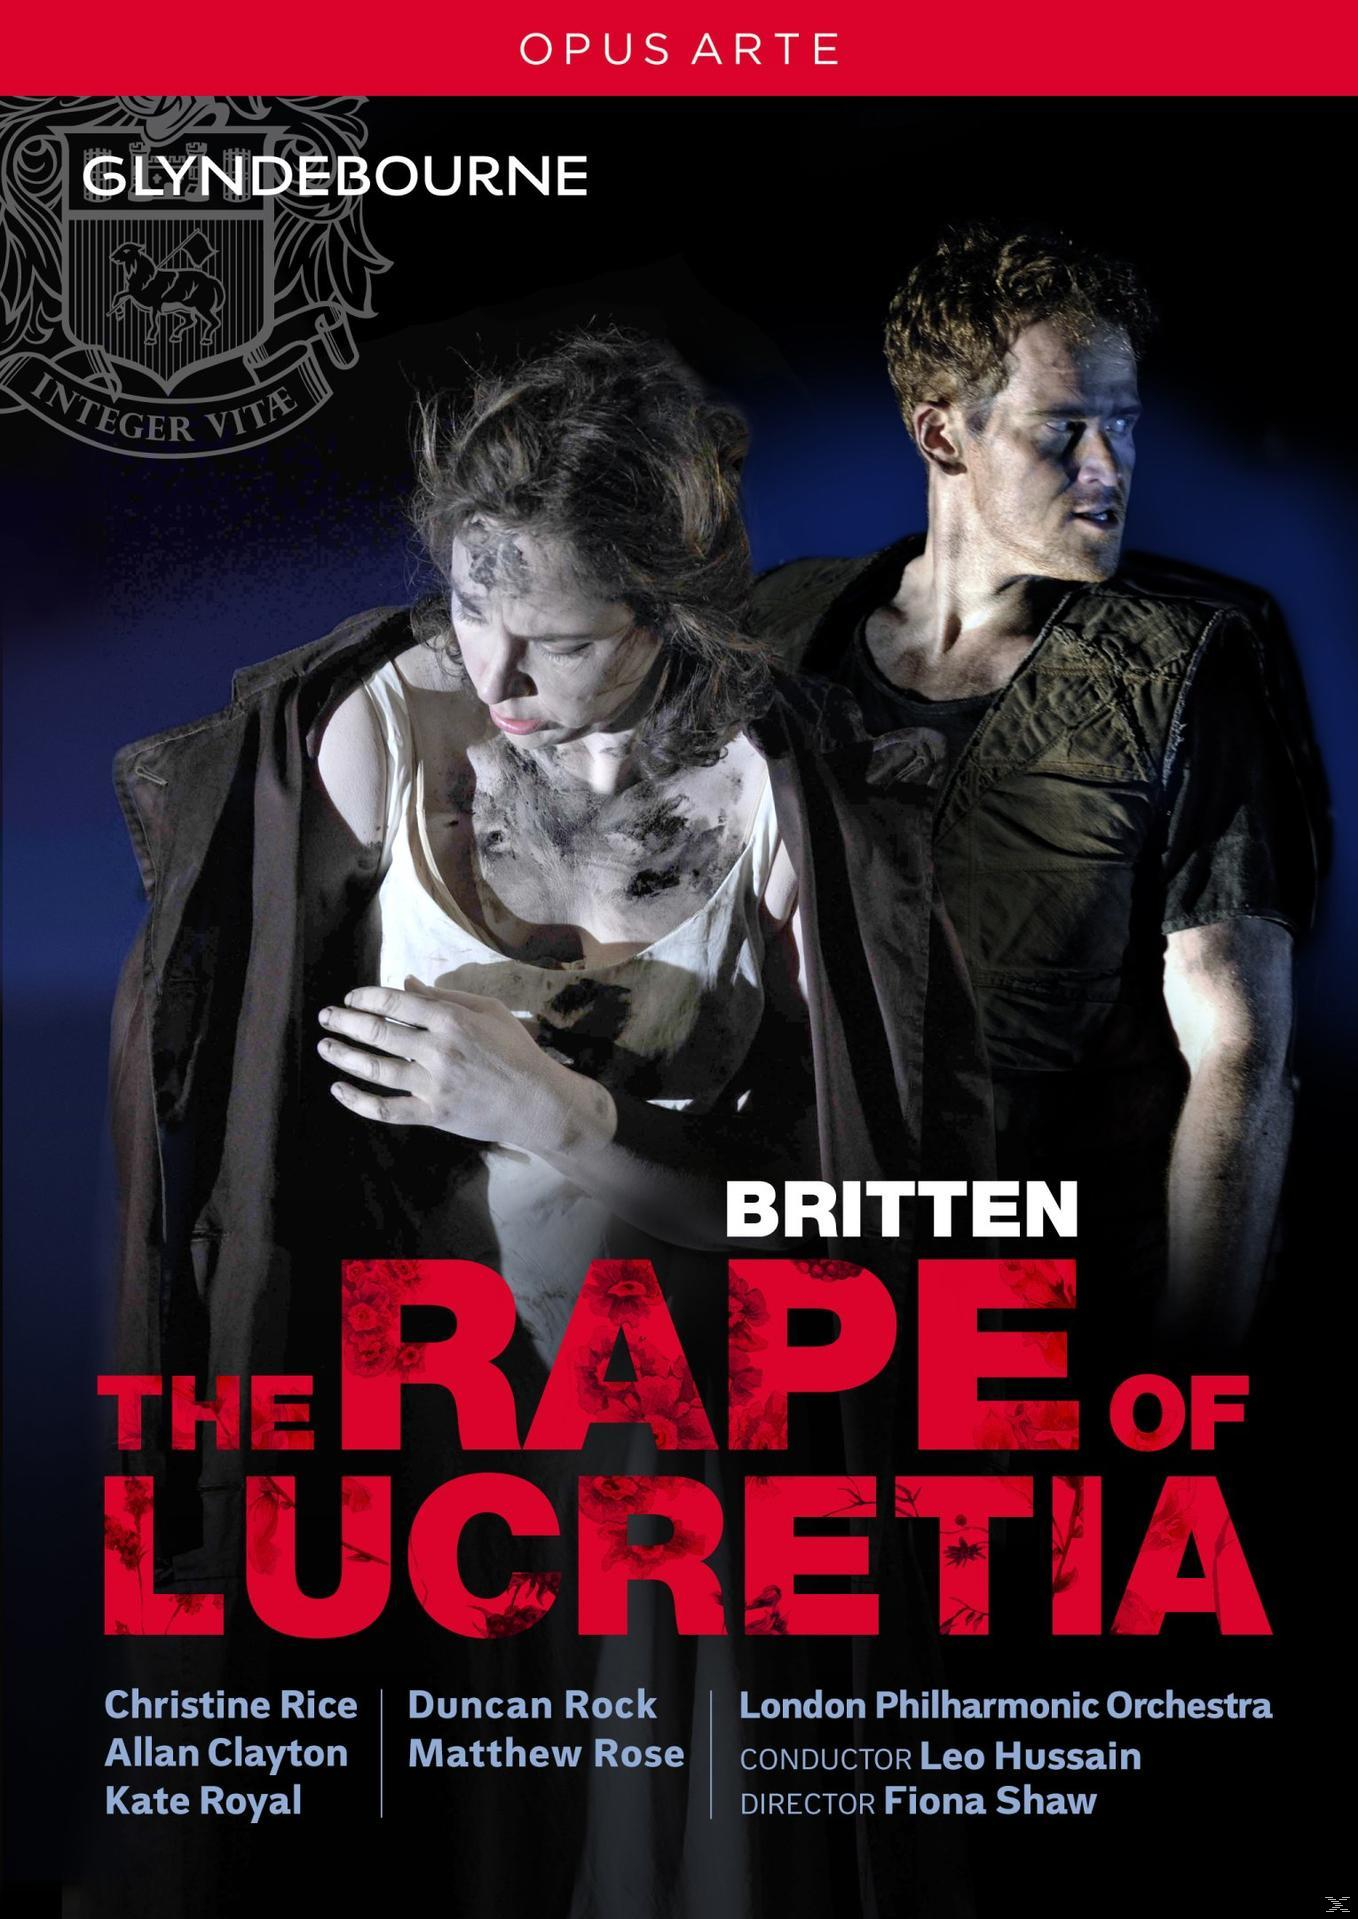 Lucretia of The (DVD) Rape -